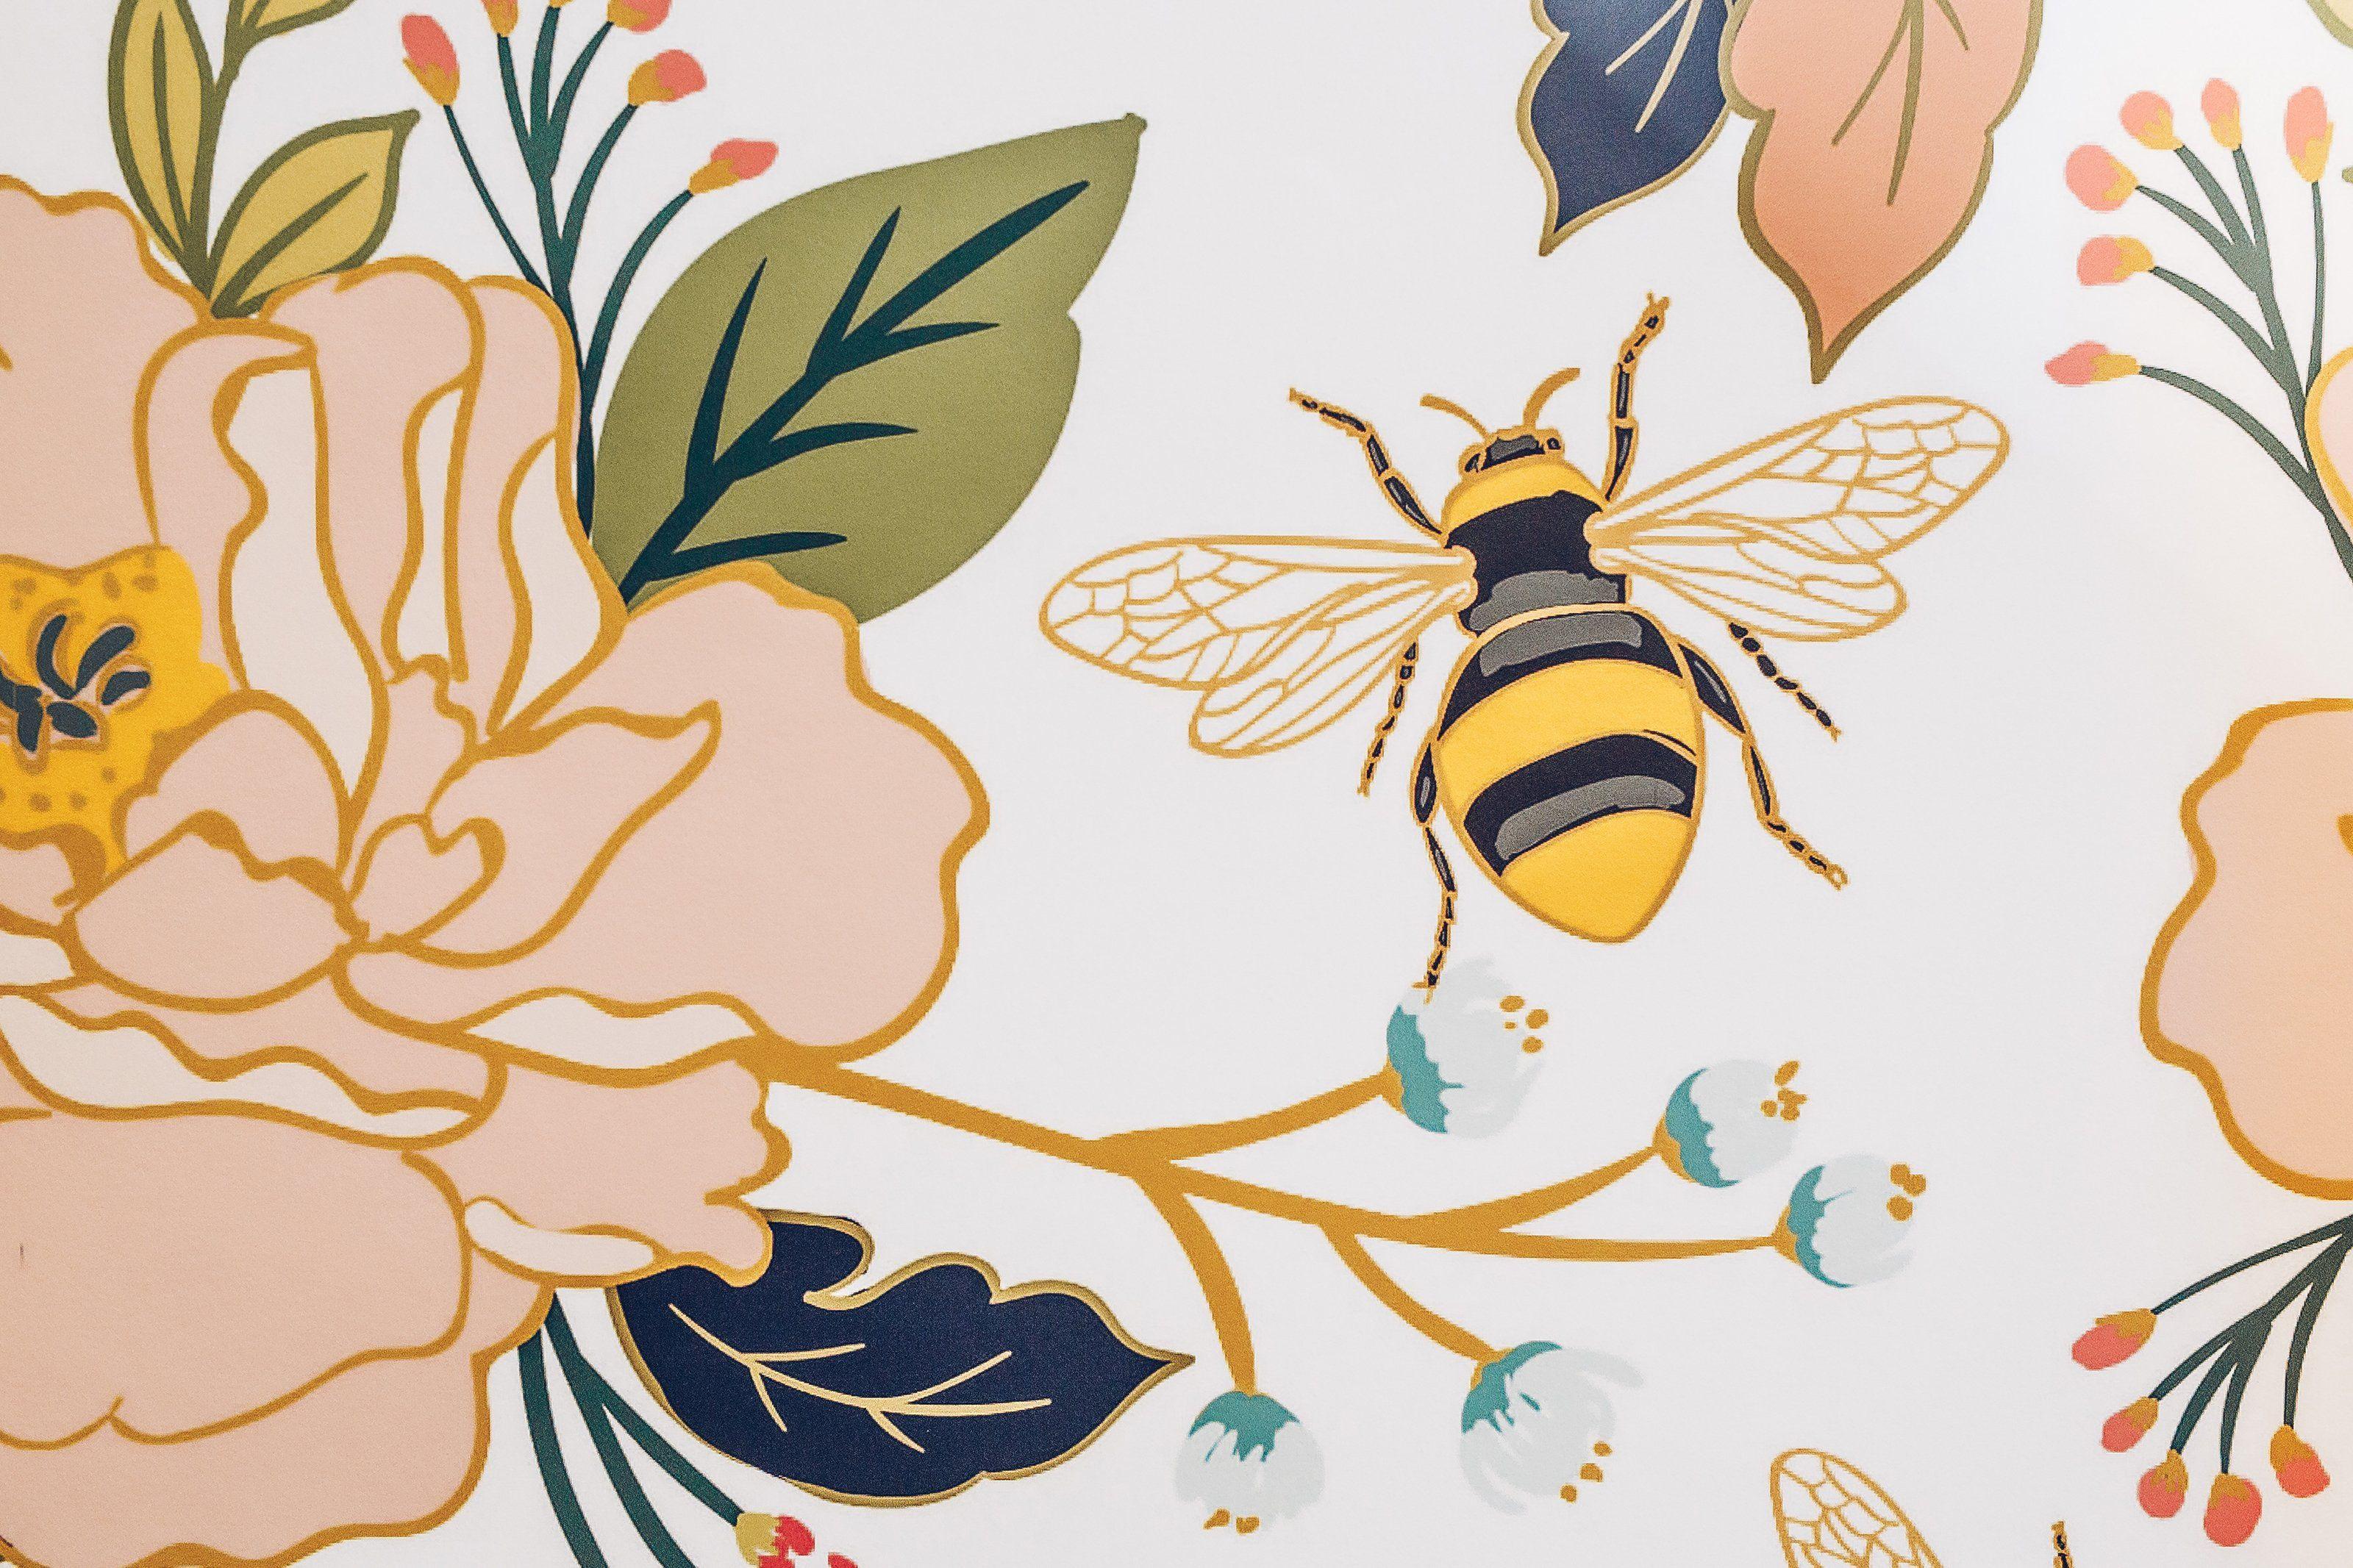 Download Honey Bee Wallpapers - Top Free Honey Bee Backgrounds ...